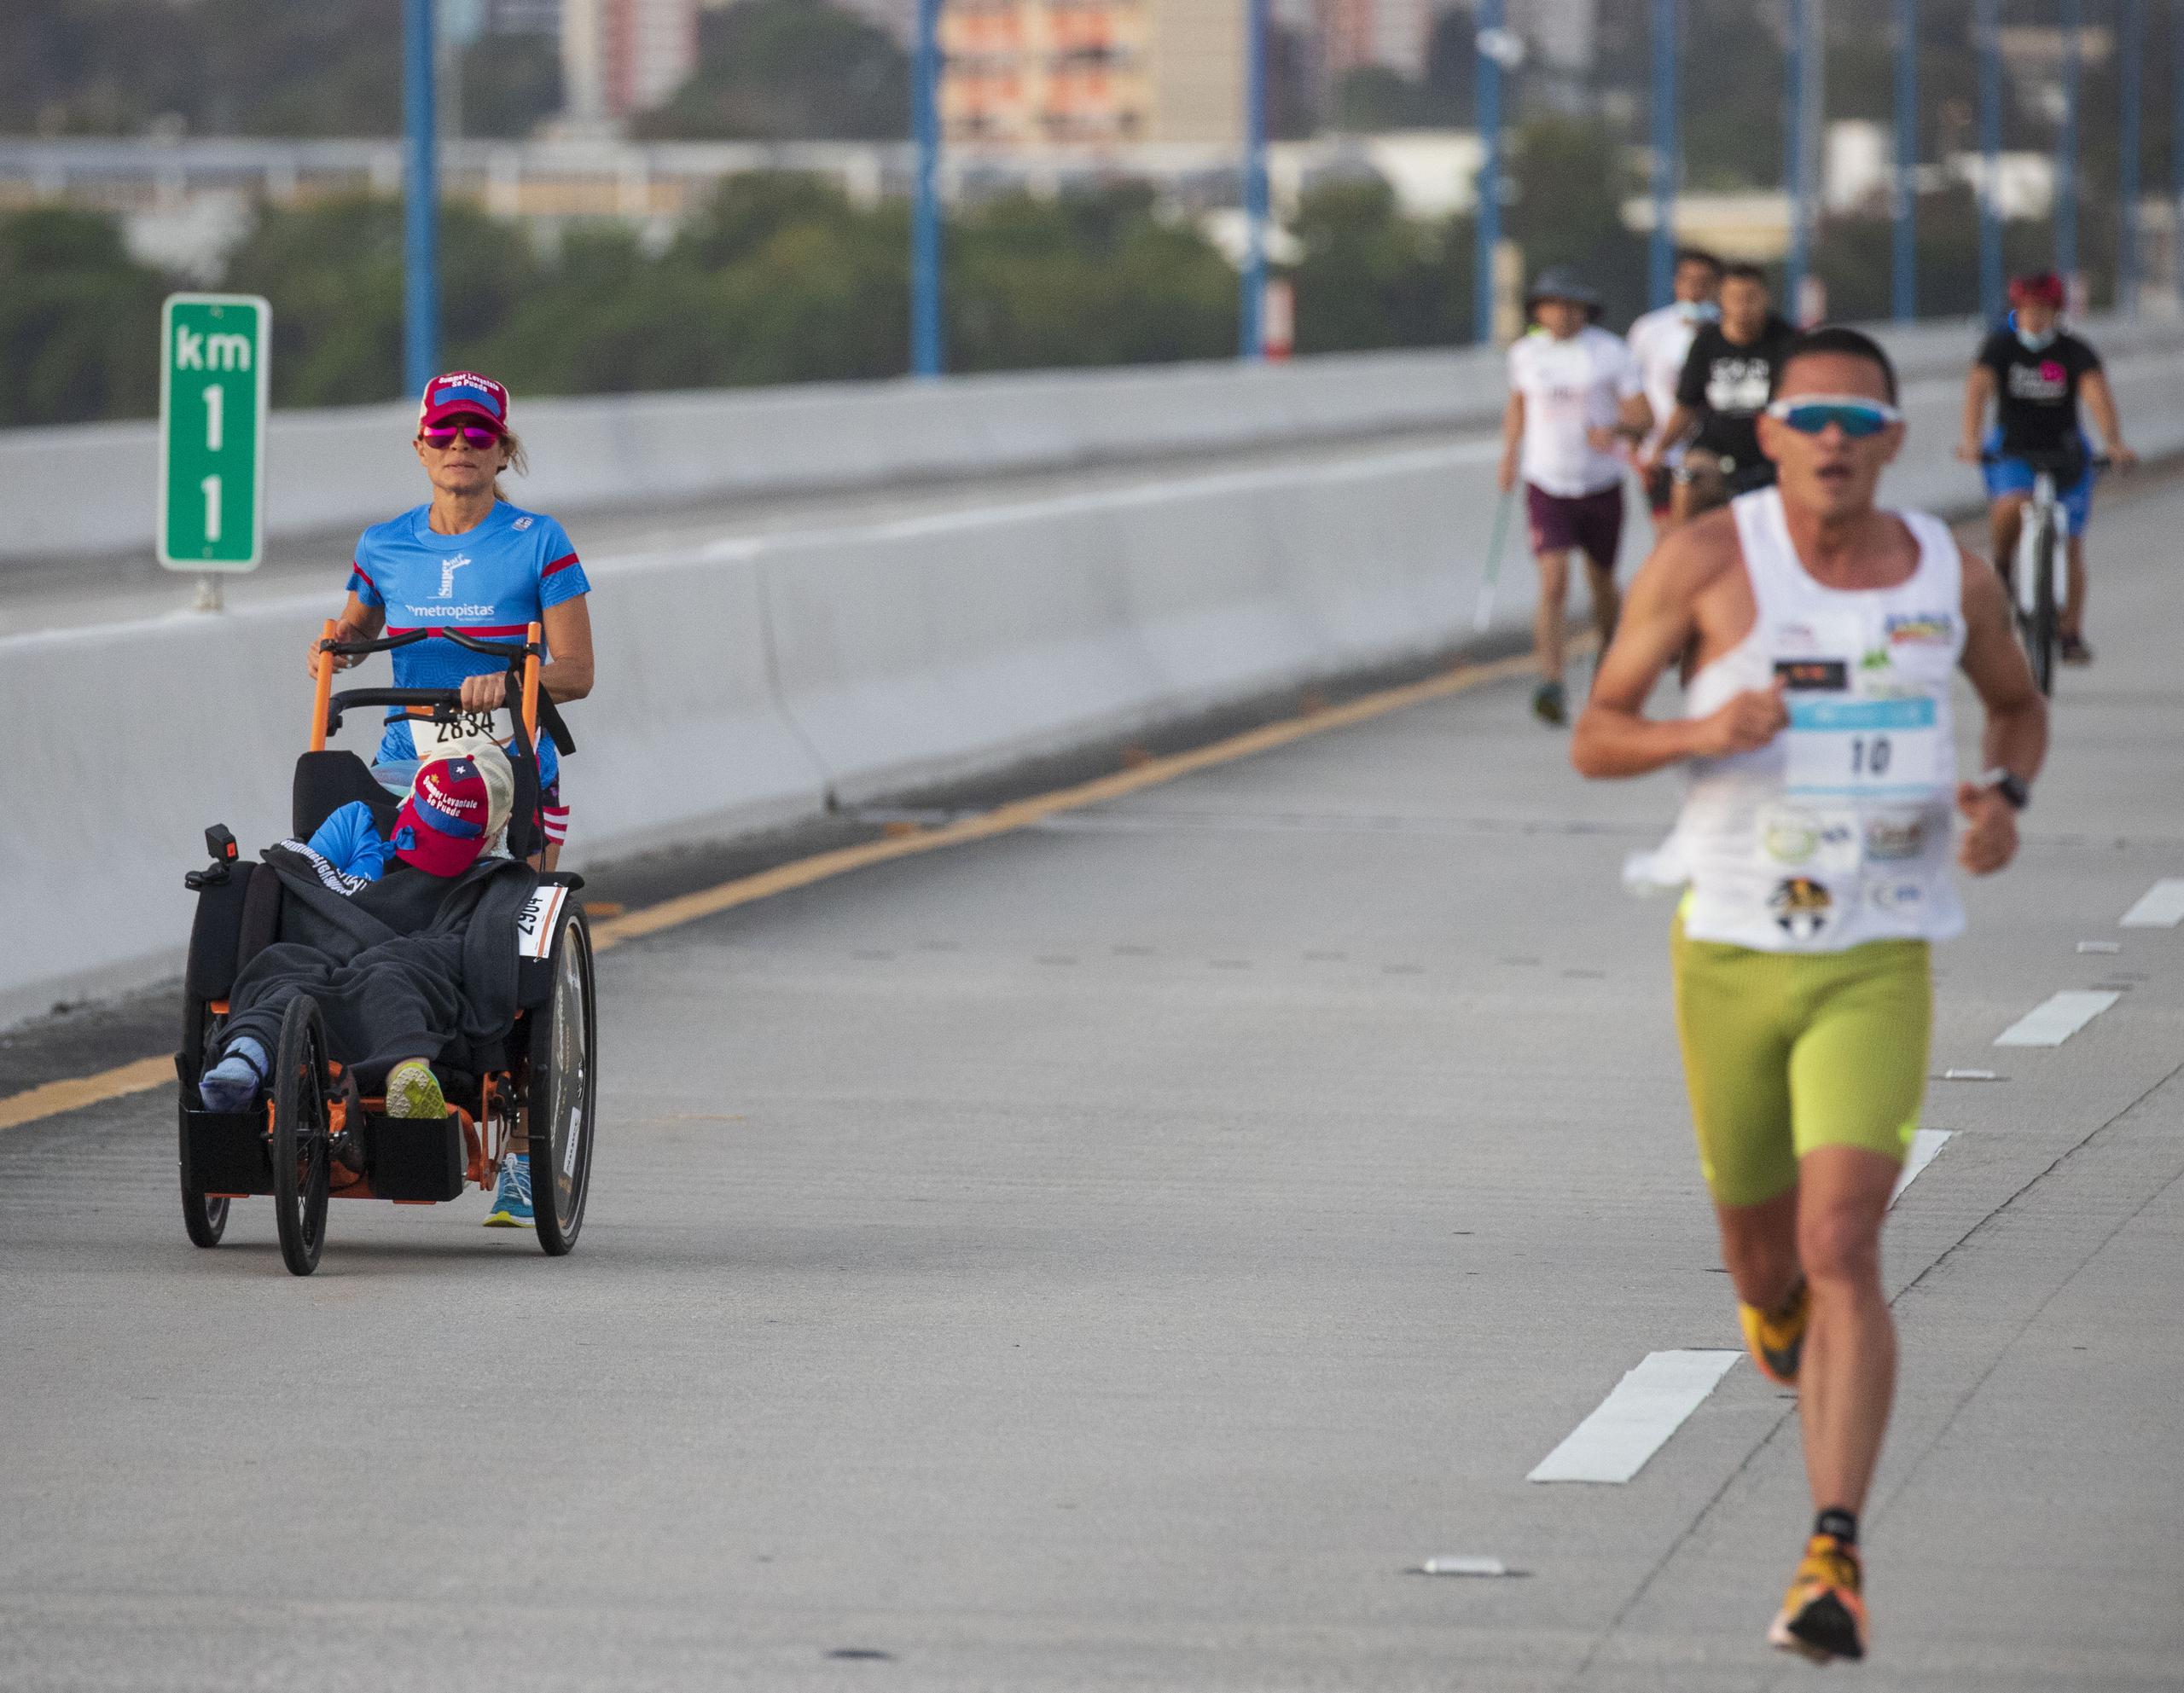 Liz López y Summer tuvieron un lapso de la carrera que corrieron sobre el Puente Teodoro Moscoso en dirección contraria a la masa de corredores, quienes les animaron.